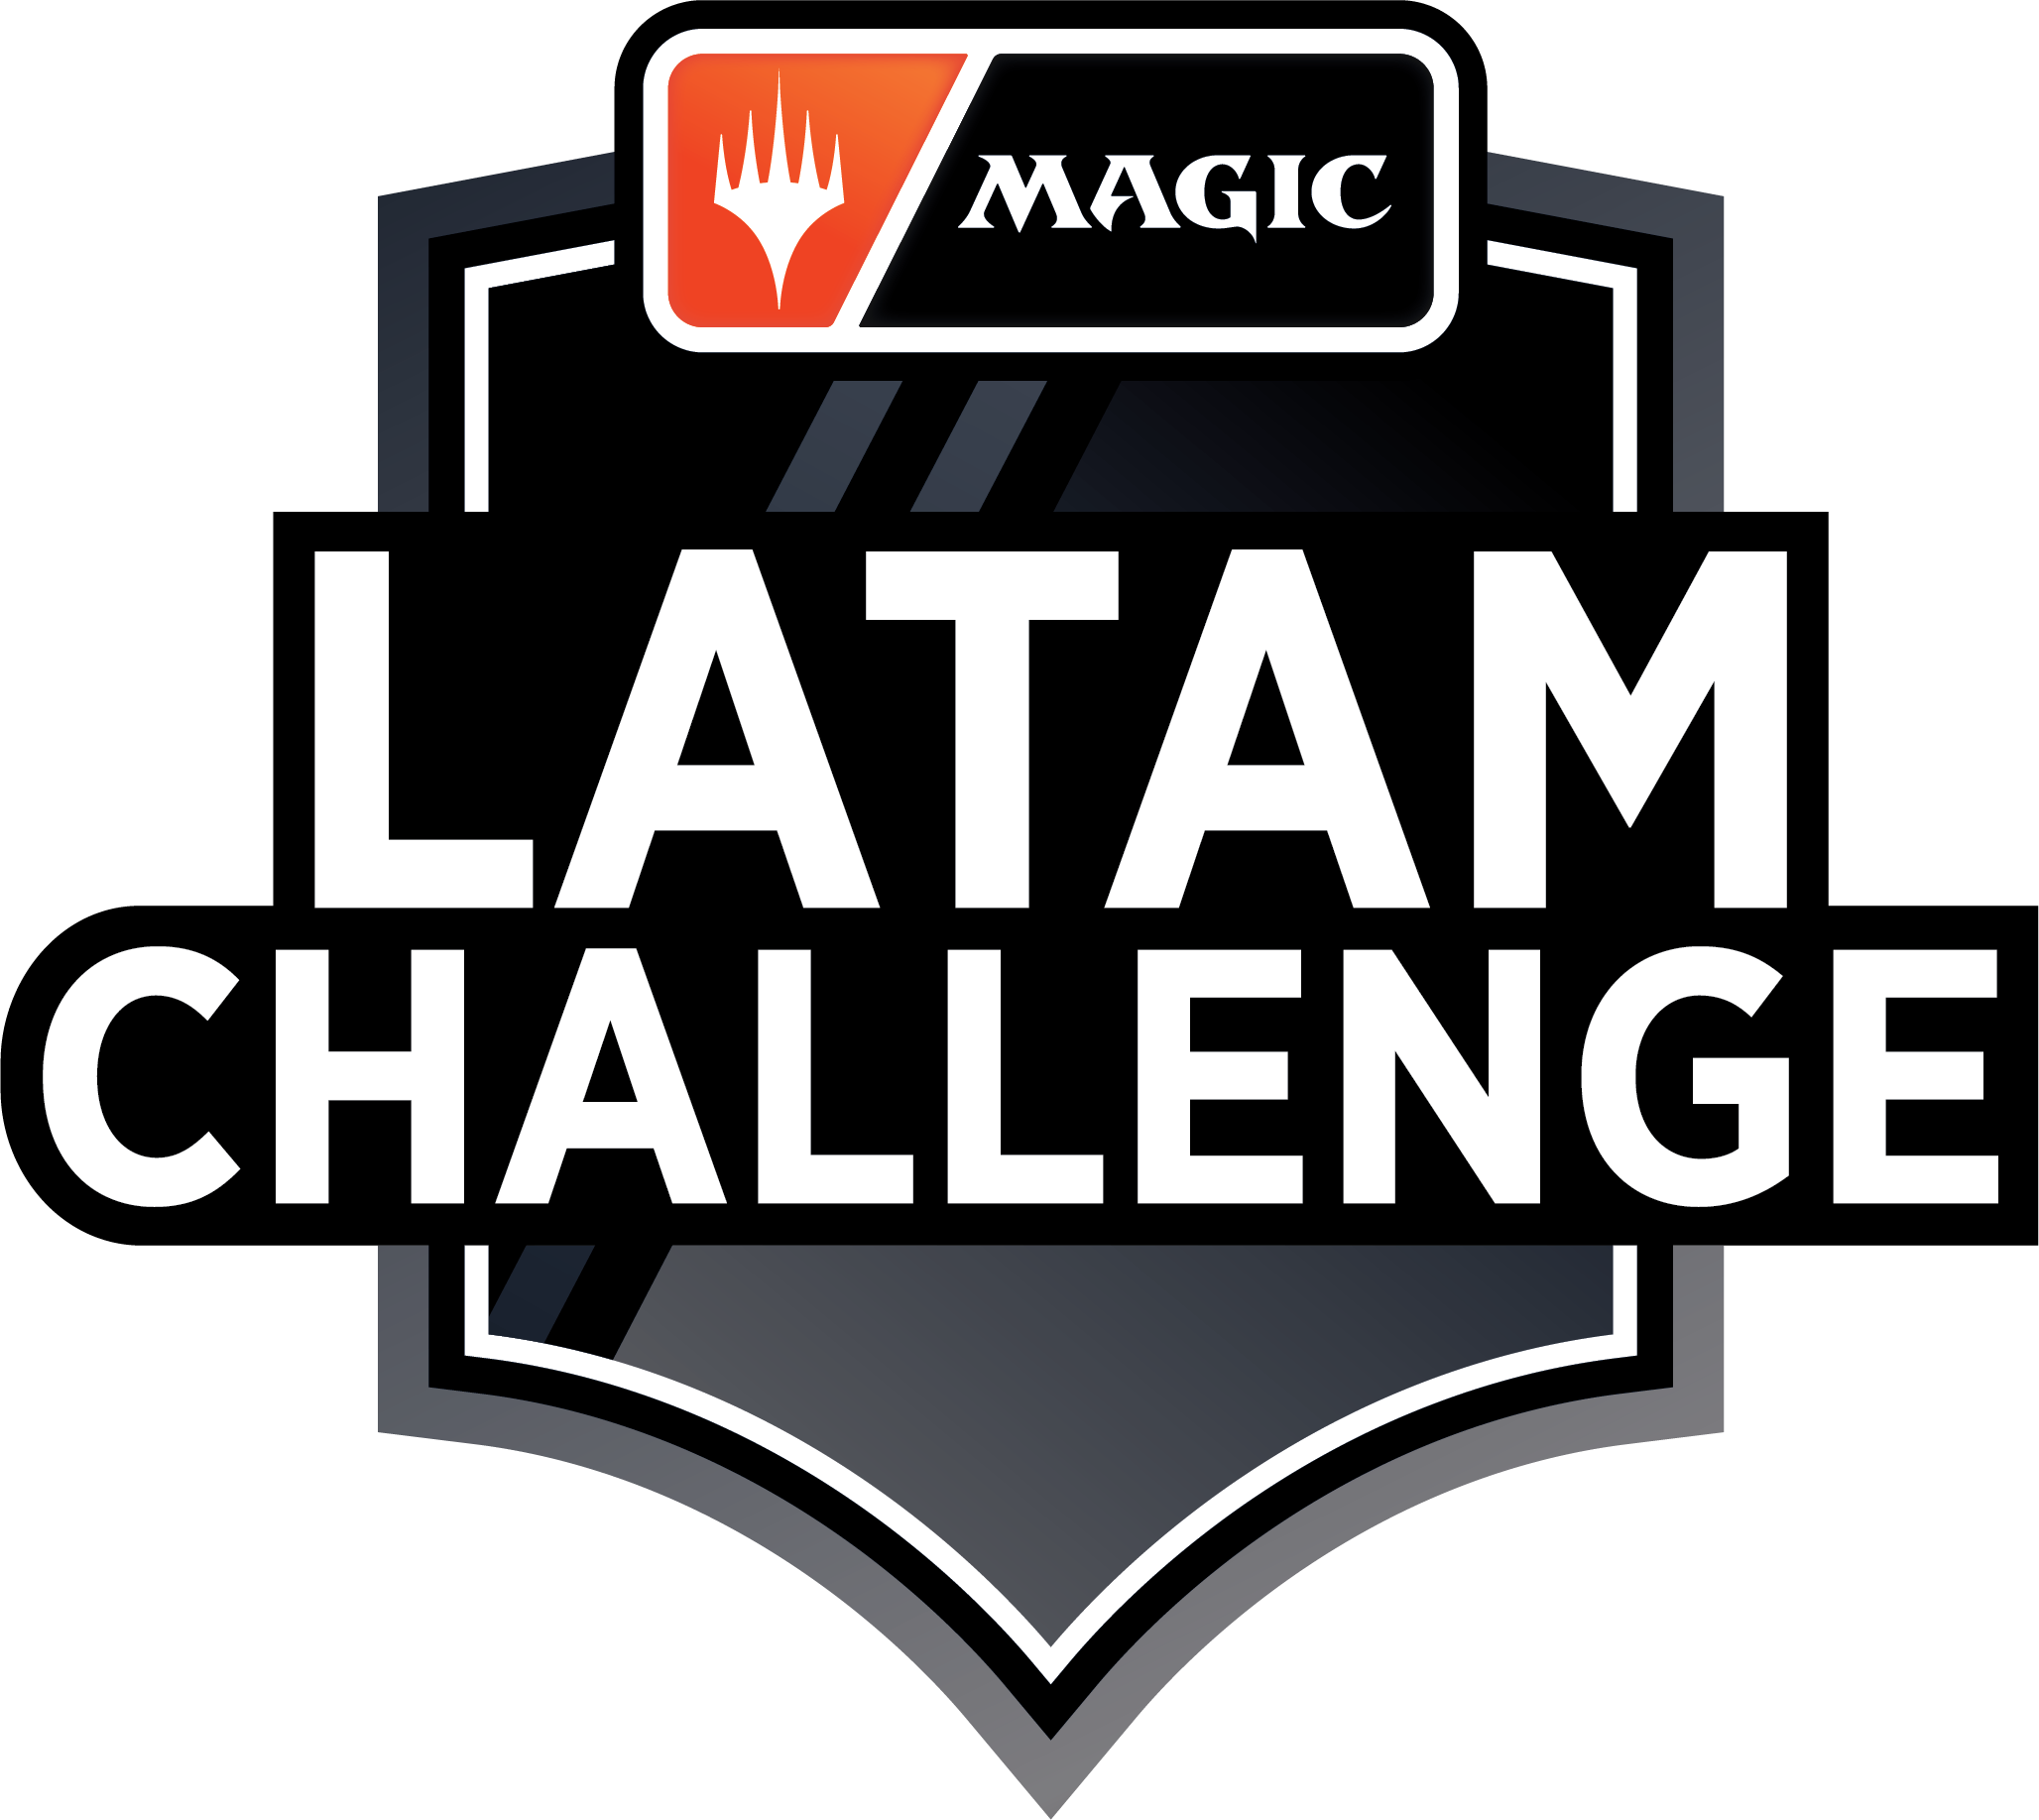 Del 21 de noviembre al 13 de diciembre se llevará a cabo la primera edición del Magic: The Gathering Latam Challenge con $45000 dolares en premios